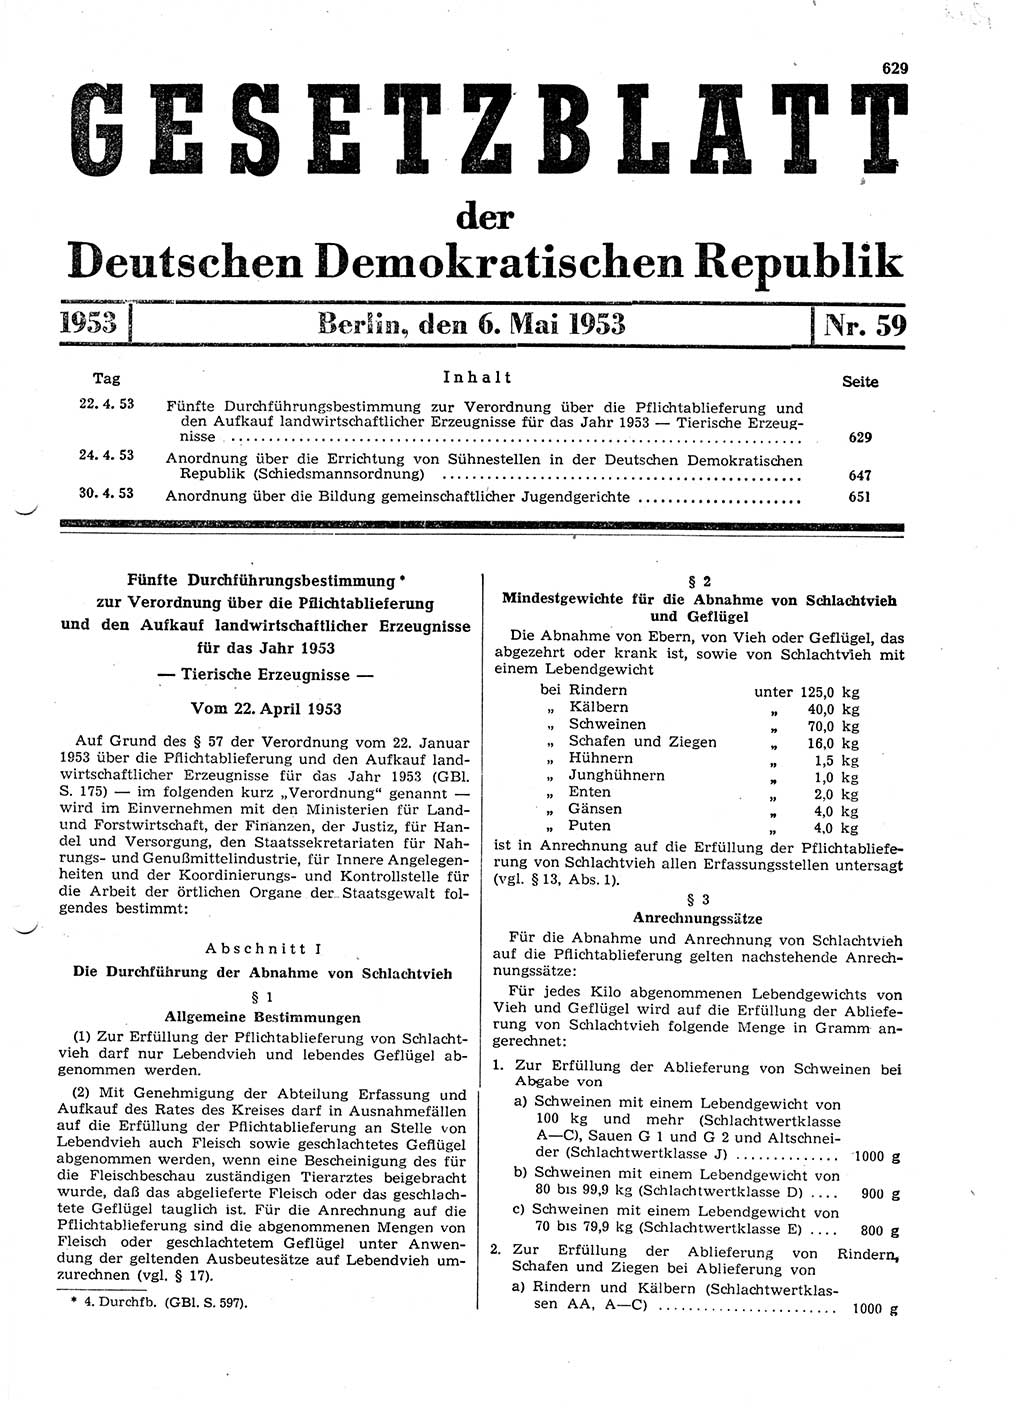 Gesetzblatt (GBl.) der Deutschen Demokratischen Republik (DDR) 1953, Seite 629 (GBl. DDR 1953, S. 629)